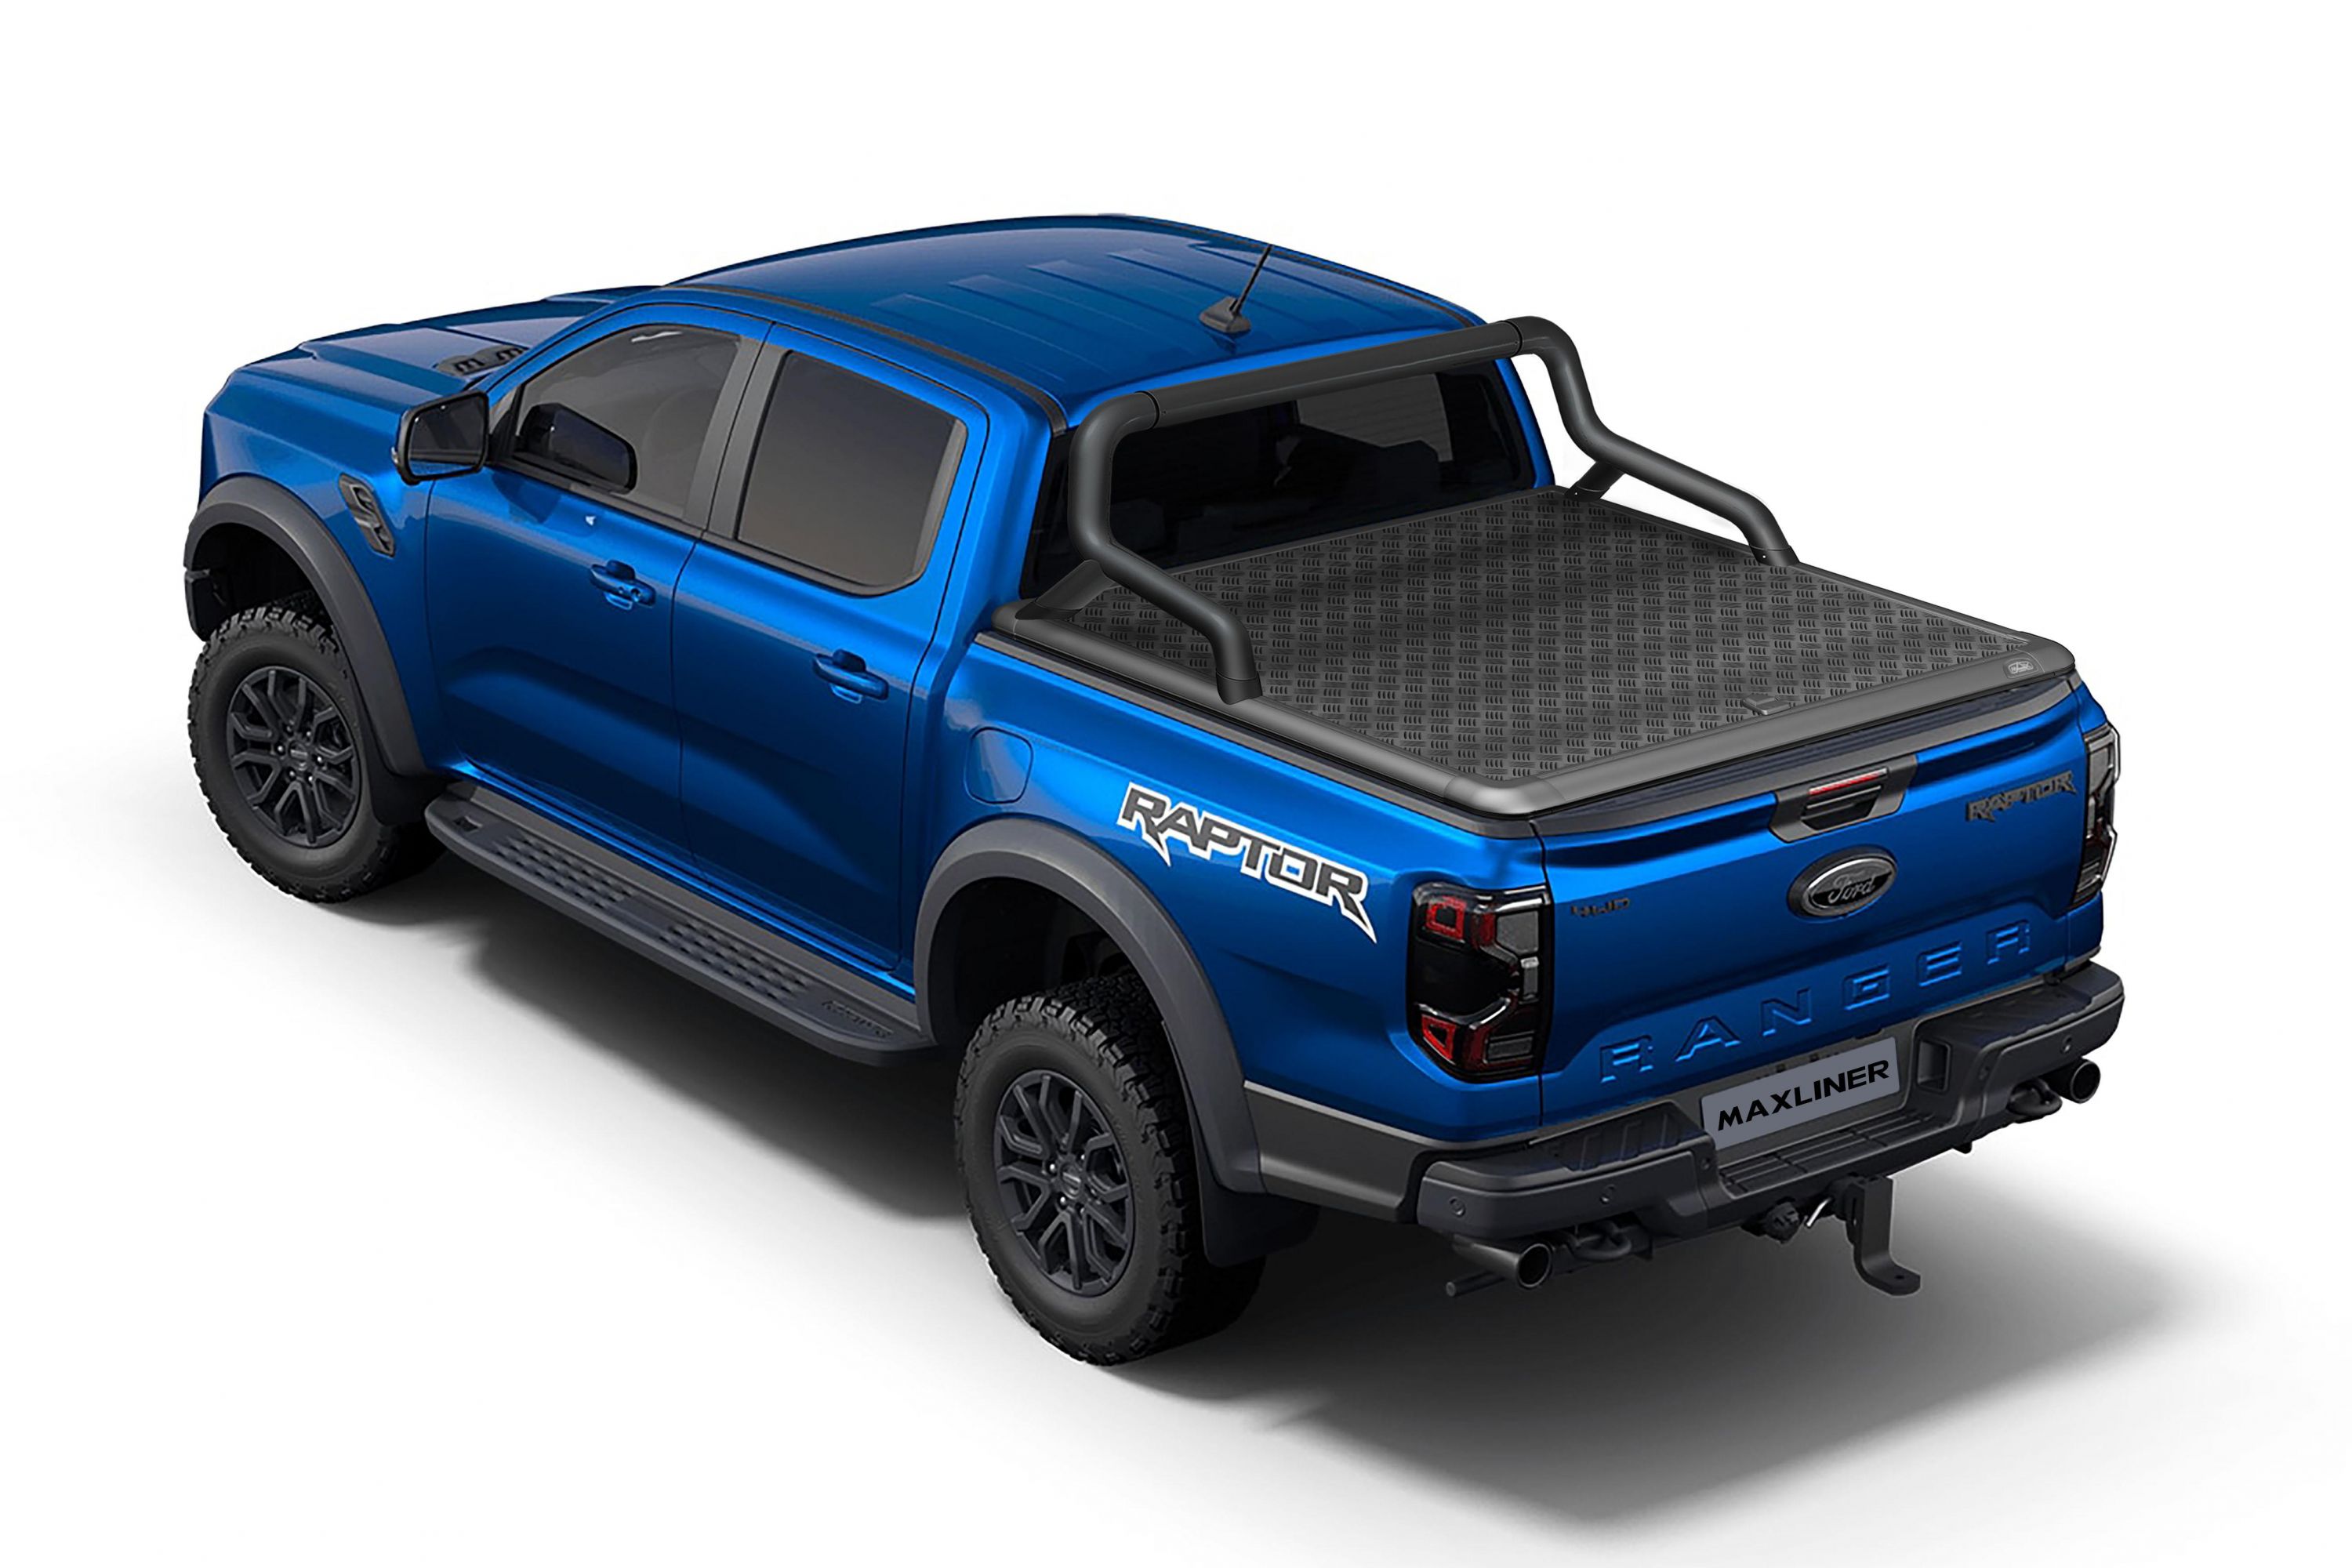 2023 Ford Ranger Maxliner accessories revealed CarExpert